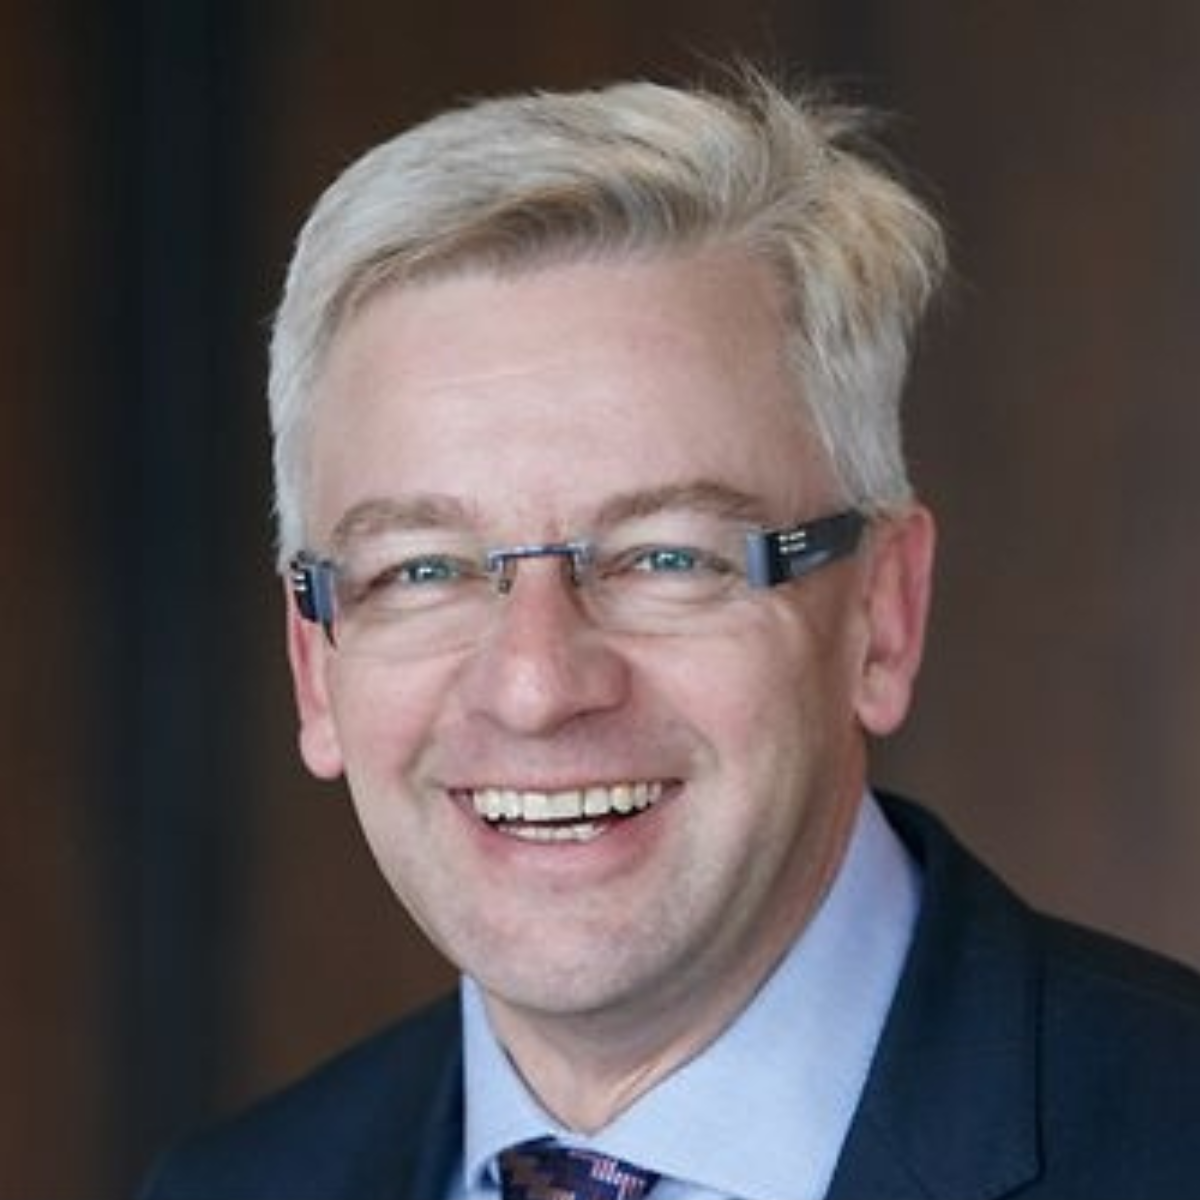 Jens Ulbrich